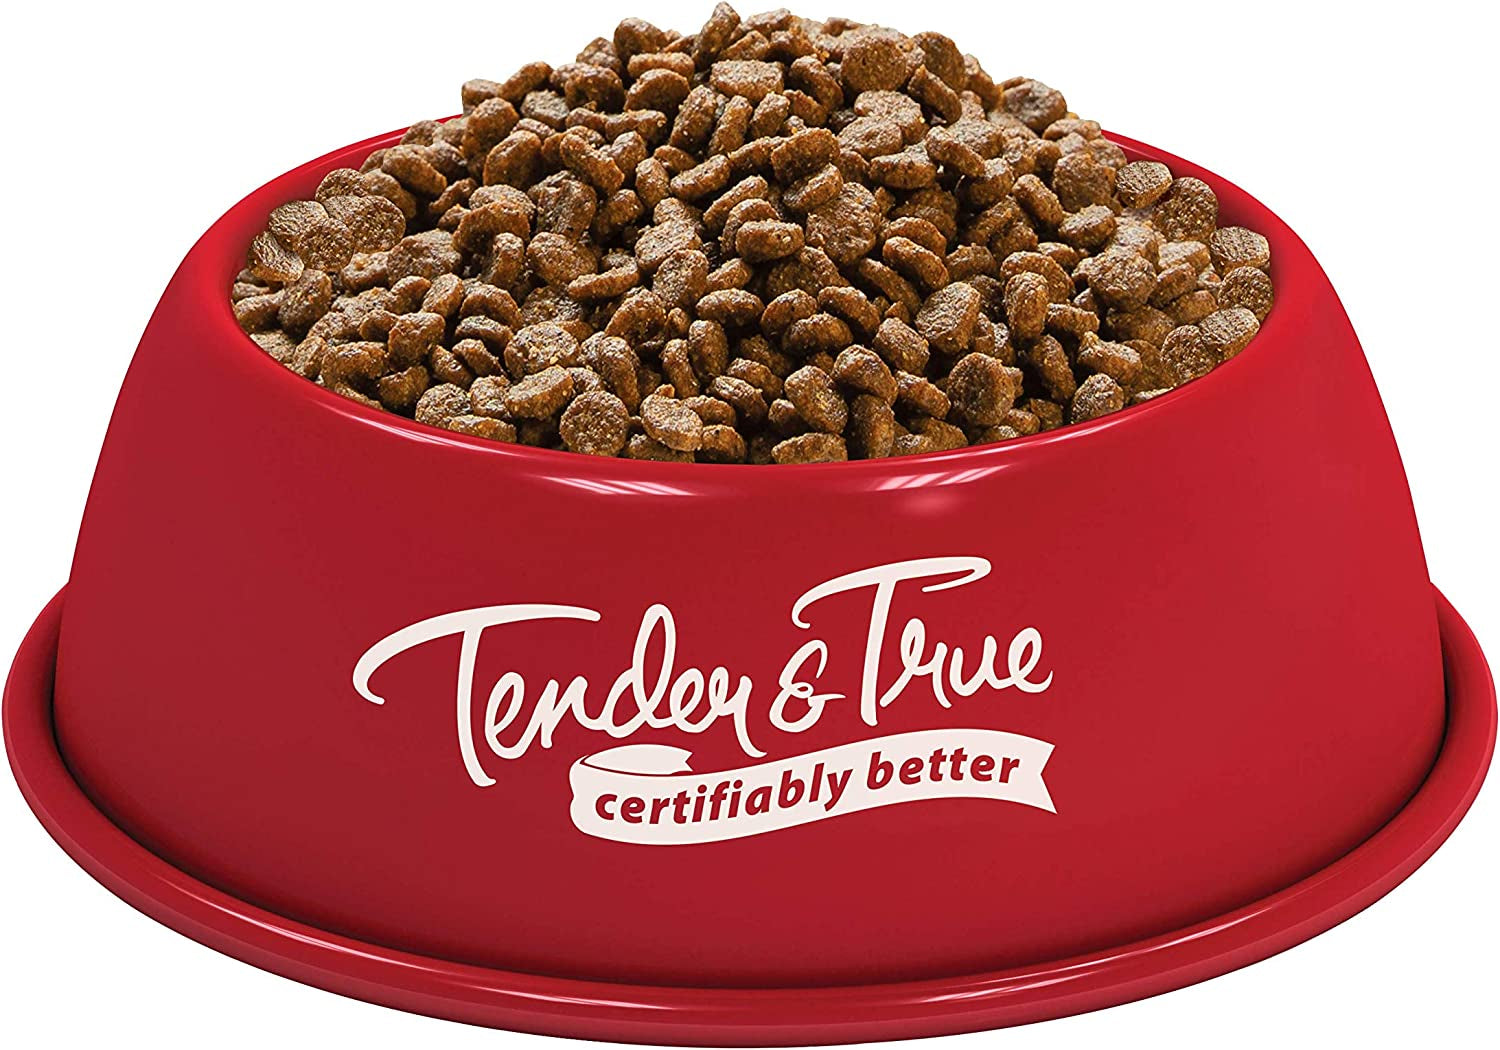 Tender & True Pet Nutrition Small Breed Organic Chicken Recipe Dog Food, 4 Lb (46003)